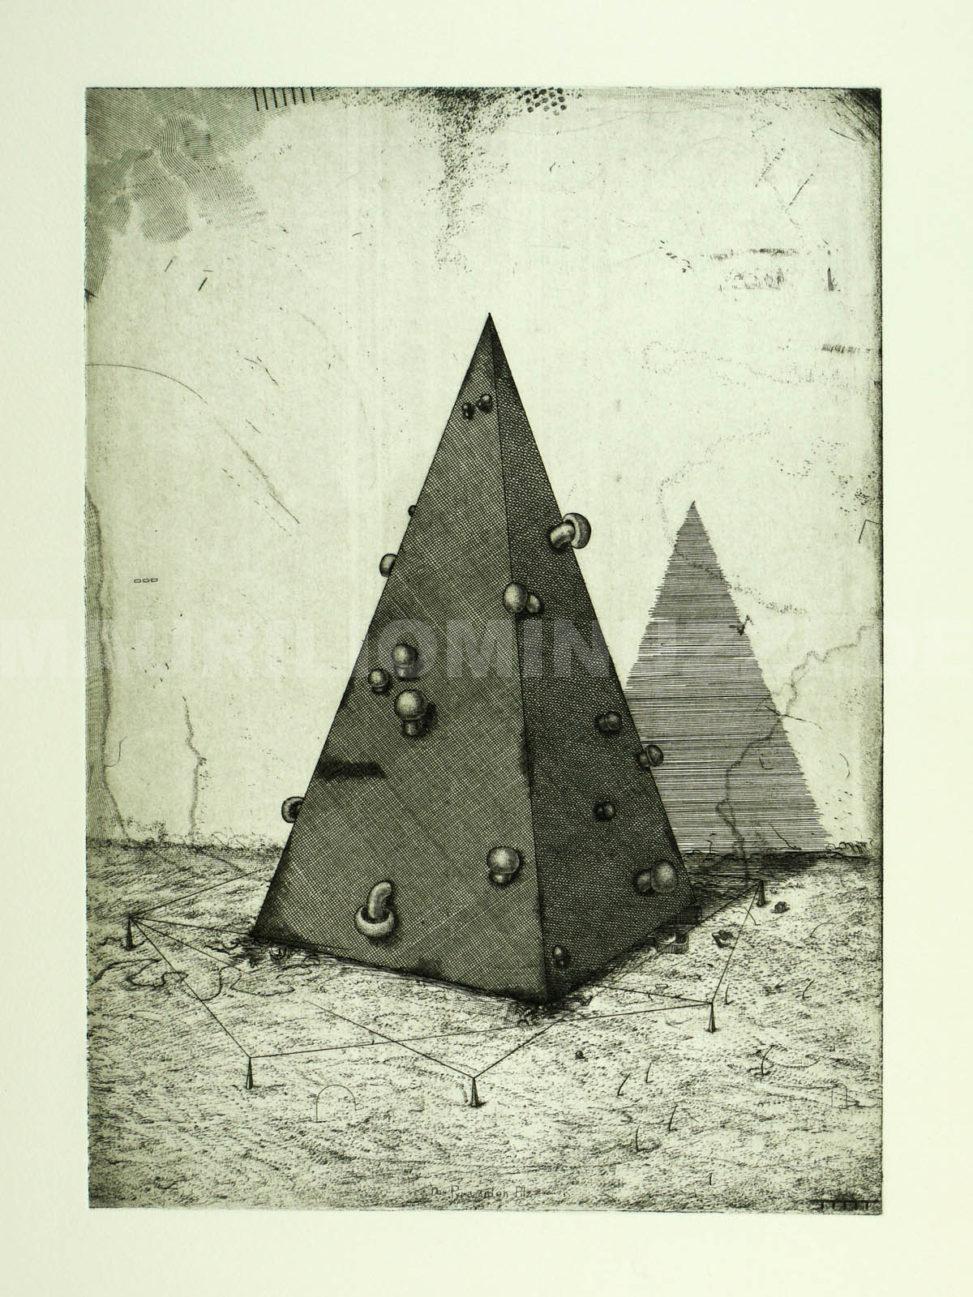 Der Pyramiden-Pilz